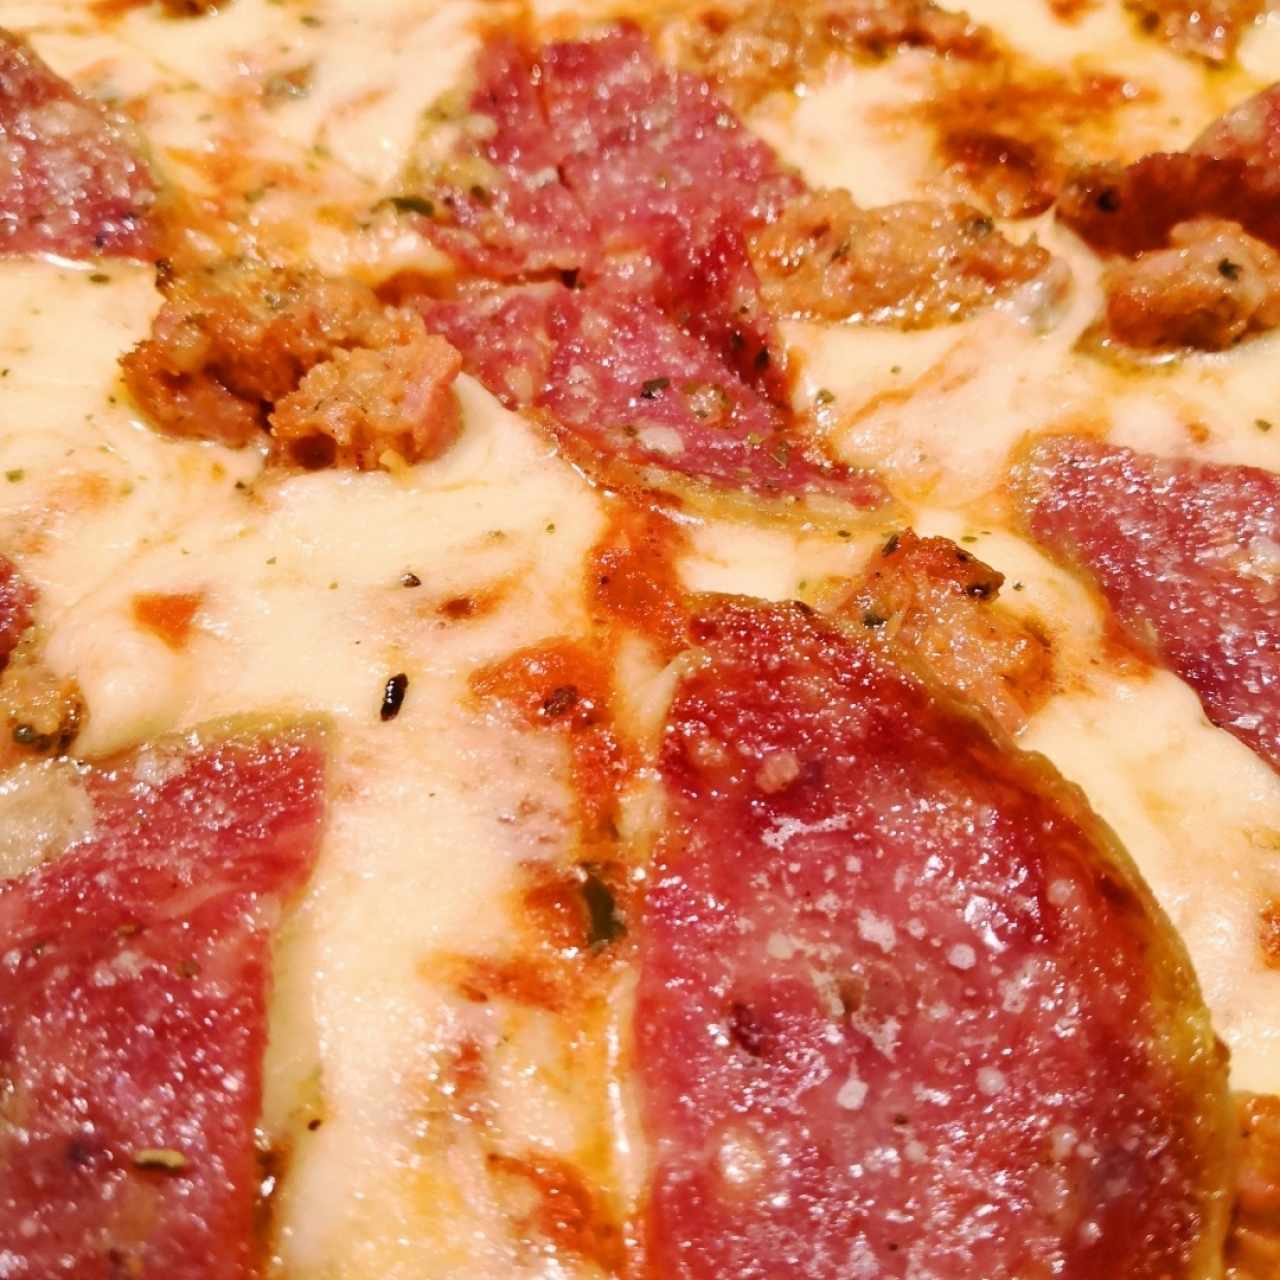 Detalle de la pizza de salami y salchicha italiana